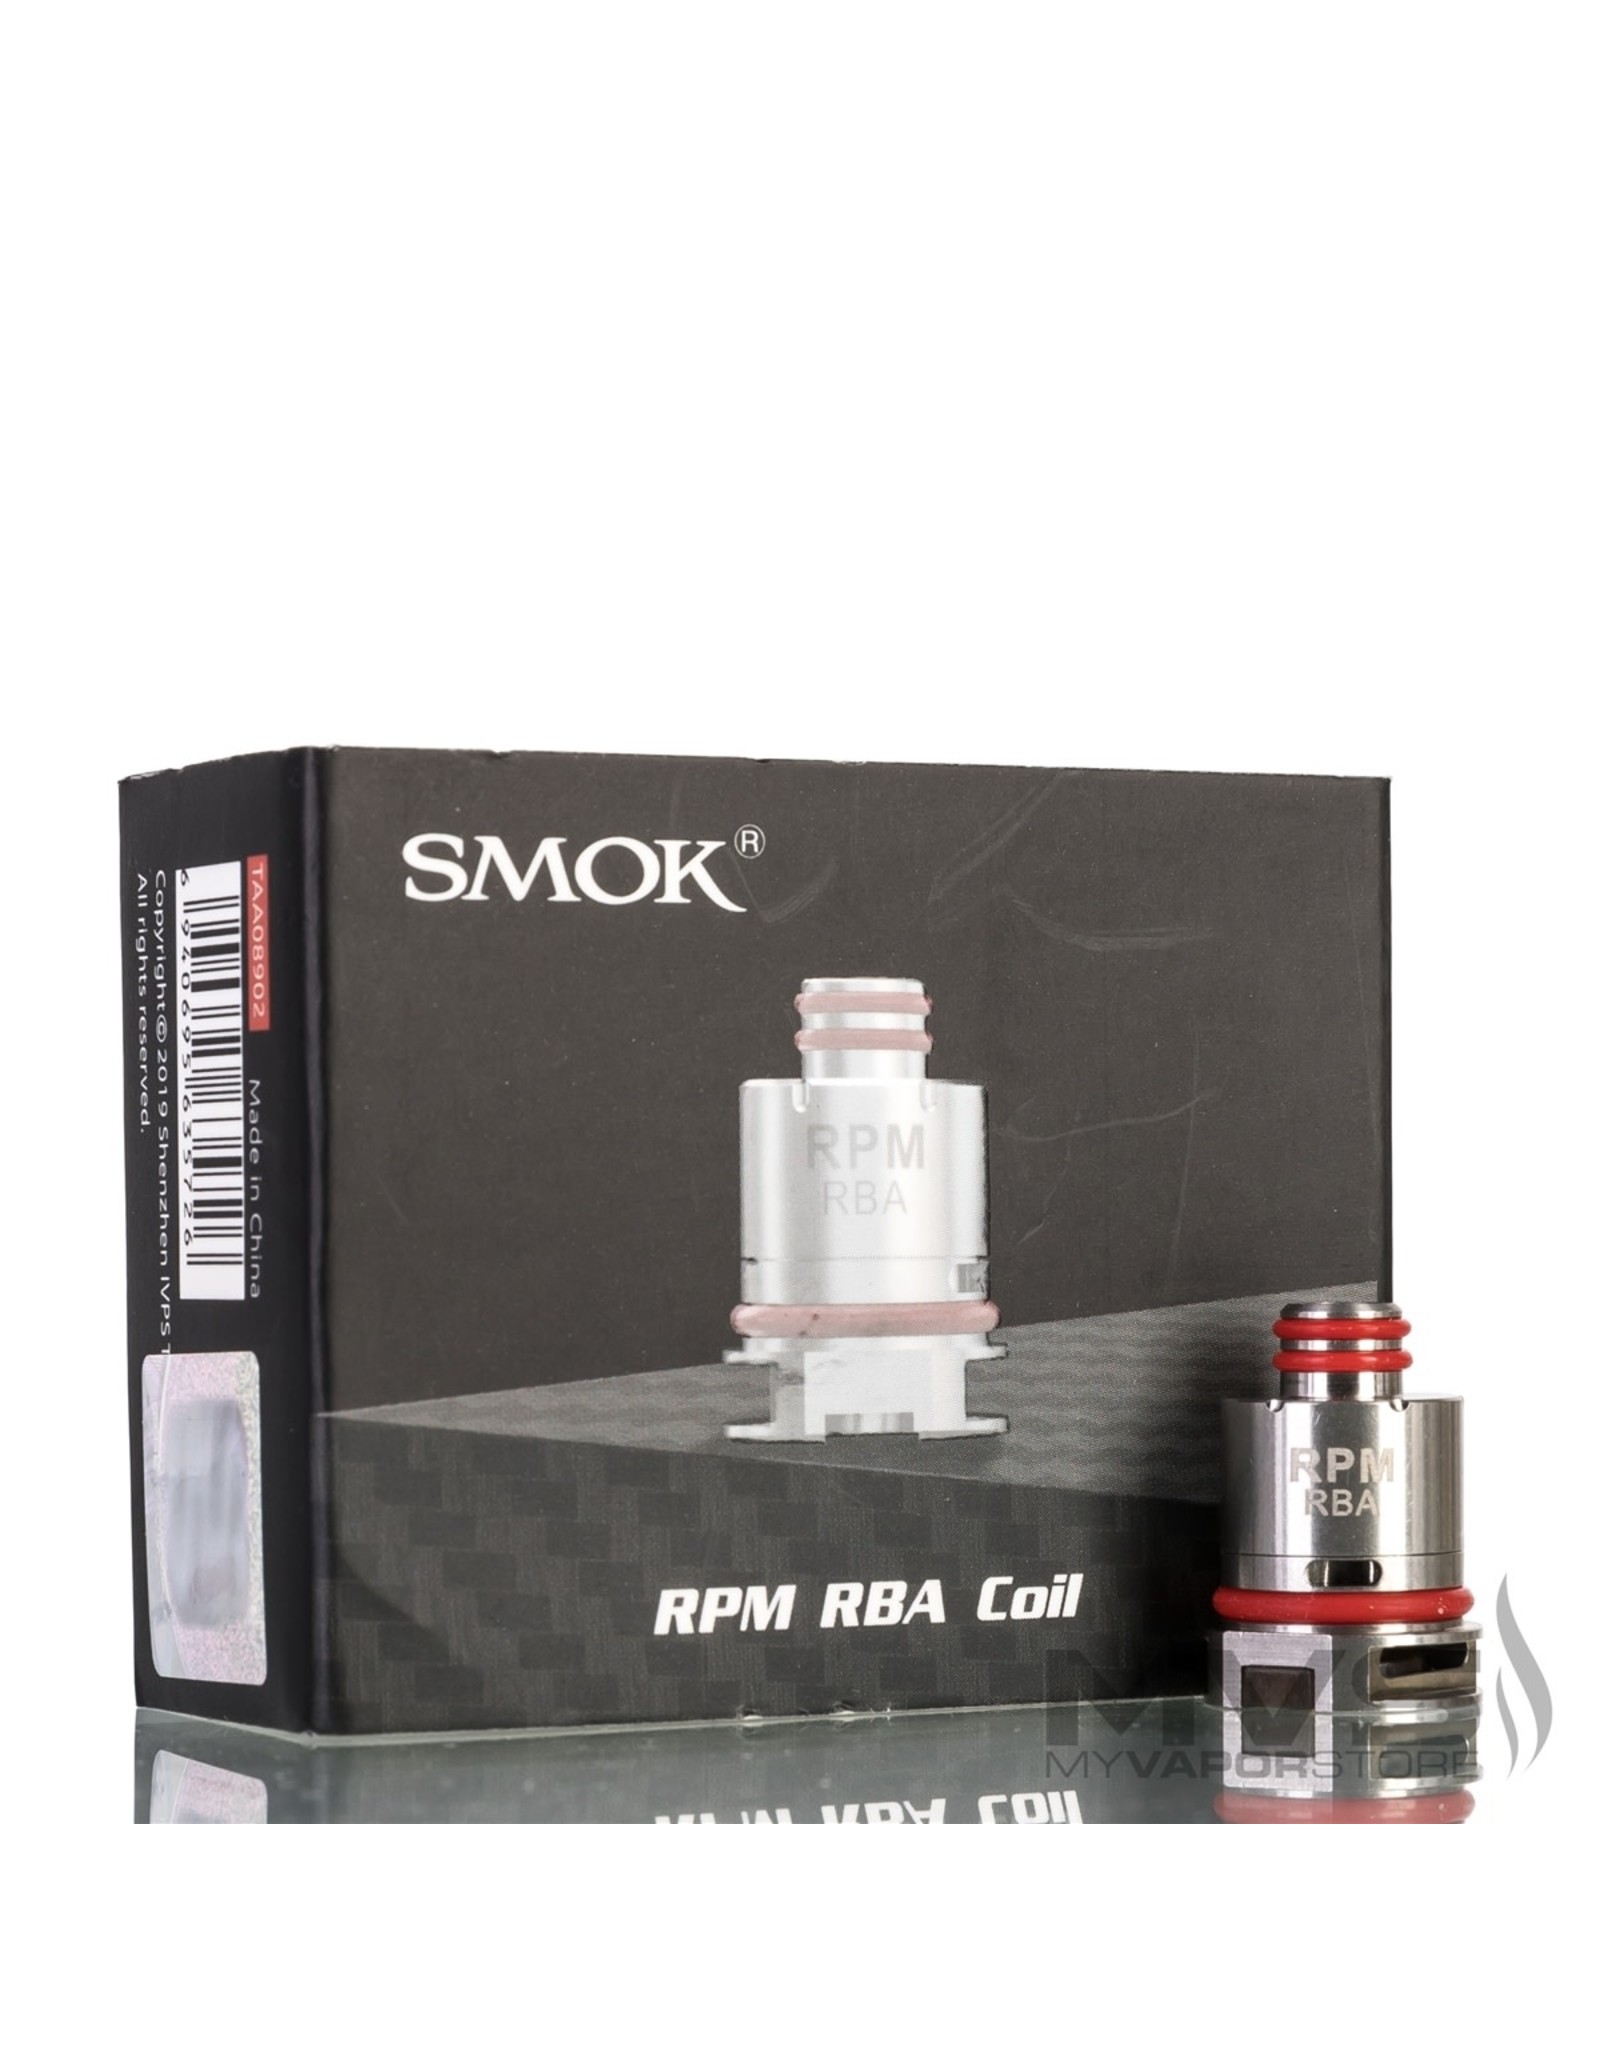 SMOK SMOK RPM RBA 0.6 COIL